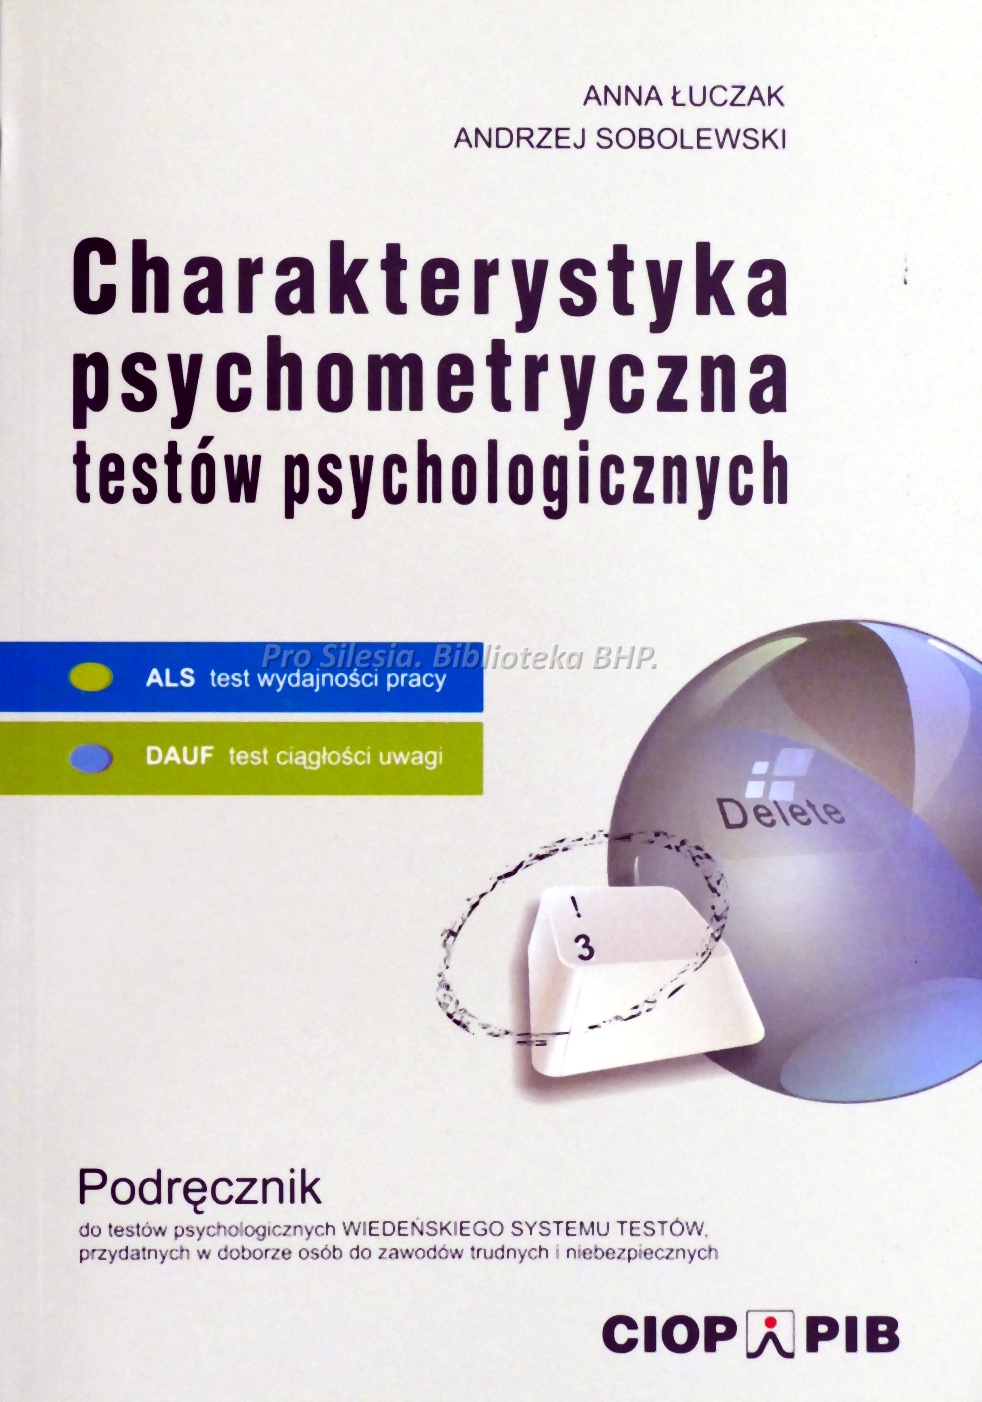 Charakterystyka psychometryczna testów psychologicznych ALS DAUF podręcznik, wyd. CIOP-PIB